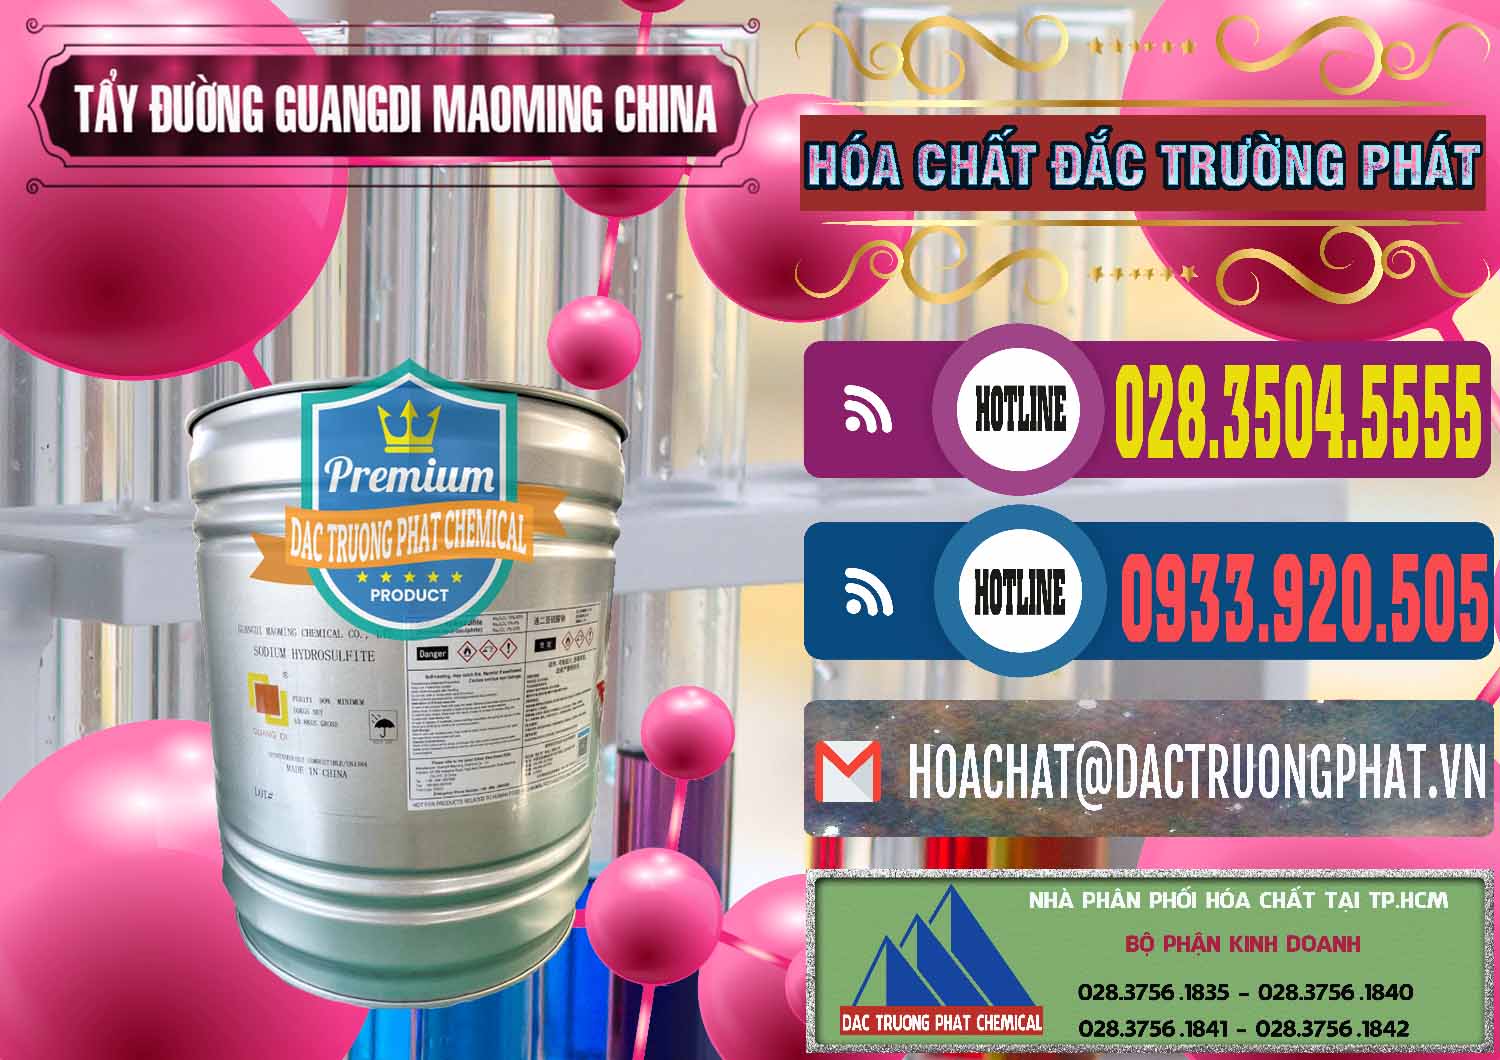 Cty chuyên phân phối & bán Tẩy Đường - NA2S2O4 Guangdi Maoming Thùng Xám Trung Quốc China - 0402 - Cty cung cấp và phân phối hóa chất tại TP.HCM - muabanhoachat.com.vn